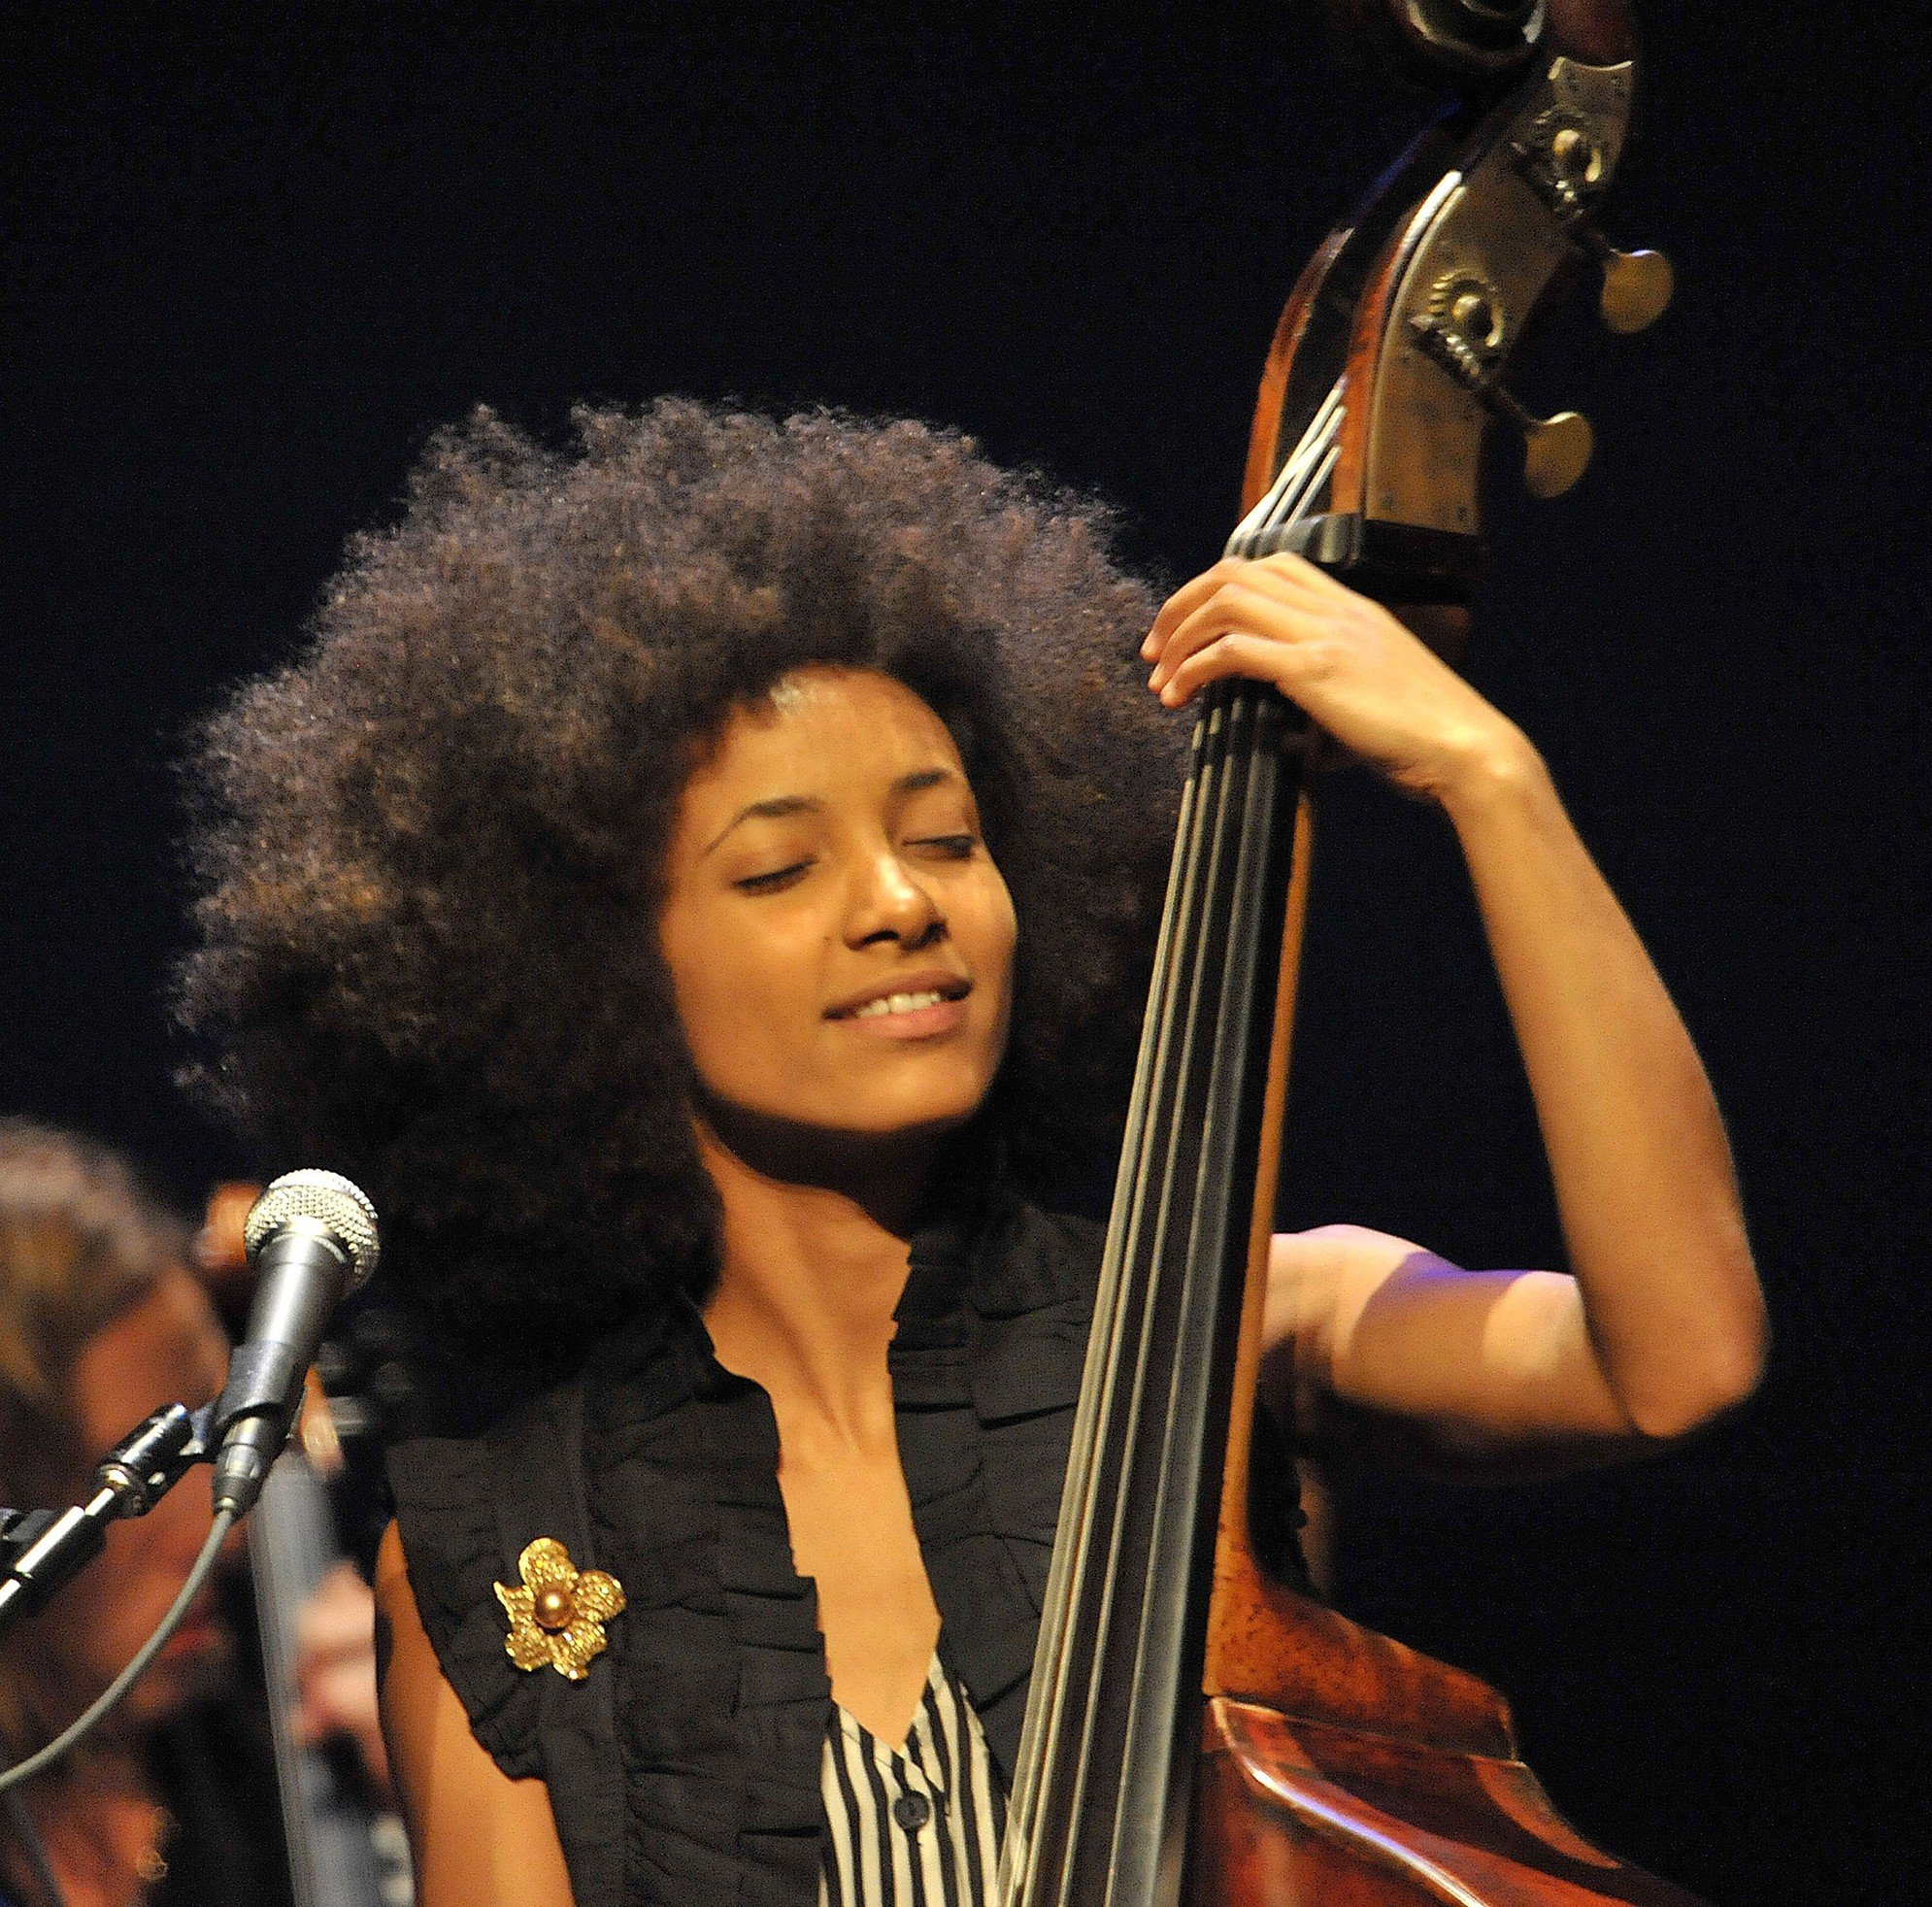 Жанры негритянской музыки. Esperanza Spalding. Эсперанса Сполдинг джаз. Джаз певица афроамериканка. Esperanza Spalding Live Copenhagen 2007.